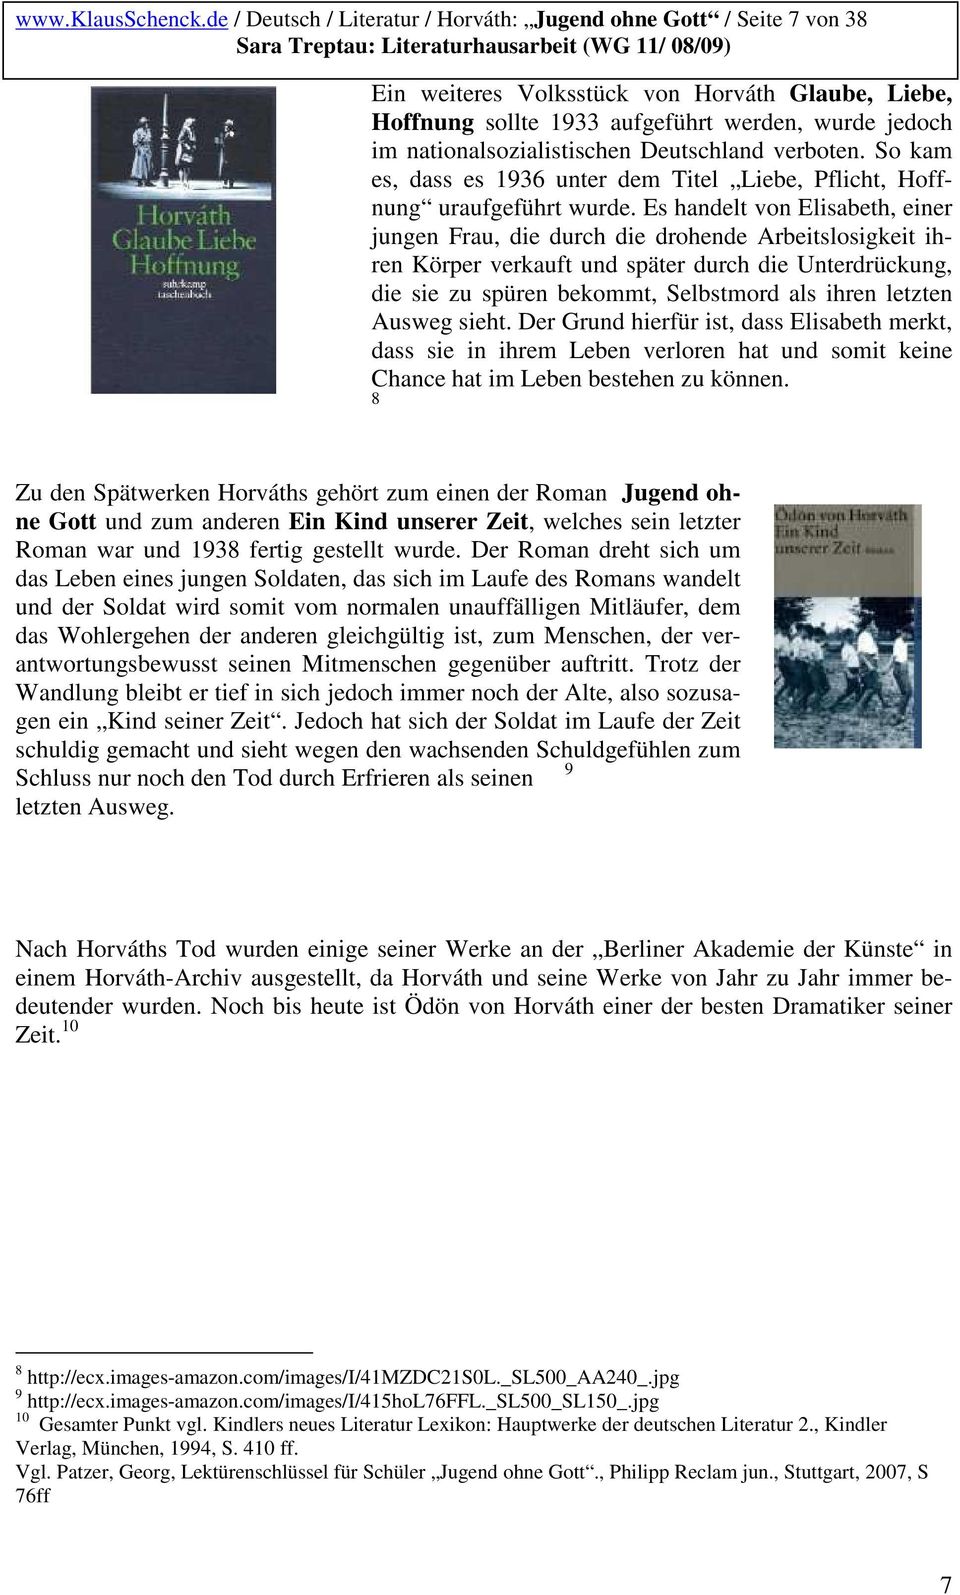 Deutsch Literatur Horvath Jugend Ohne Gott Seite 2 Von 38 Sara Treptau Literaturhausarbeit Wg 11 08 09 Pdf Kostenfreier Download